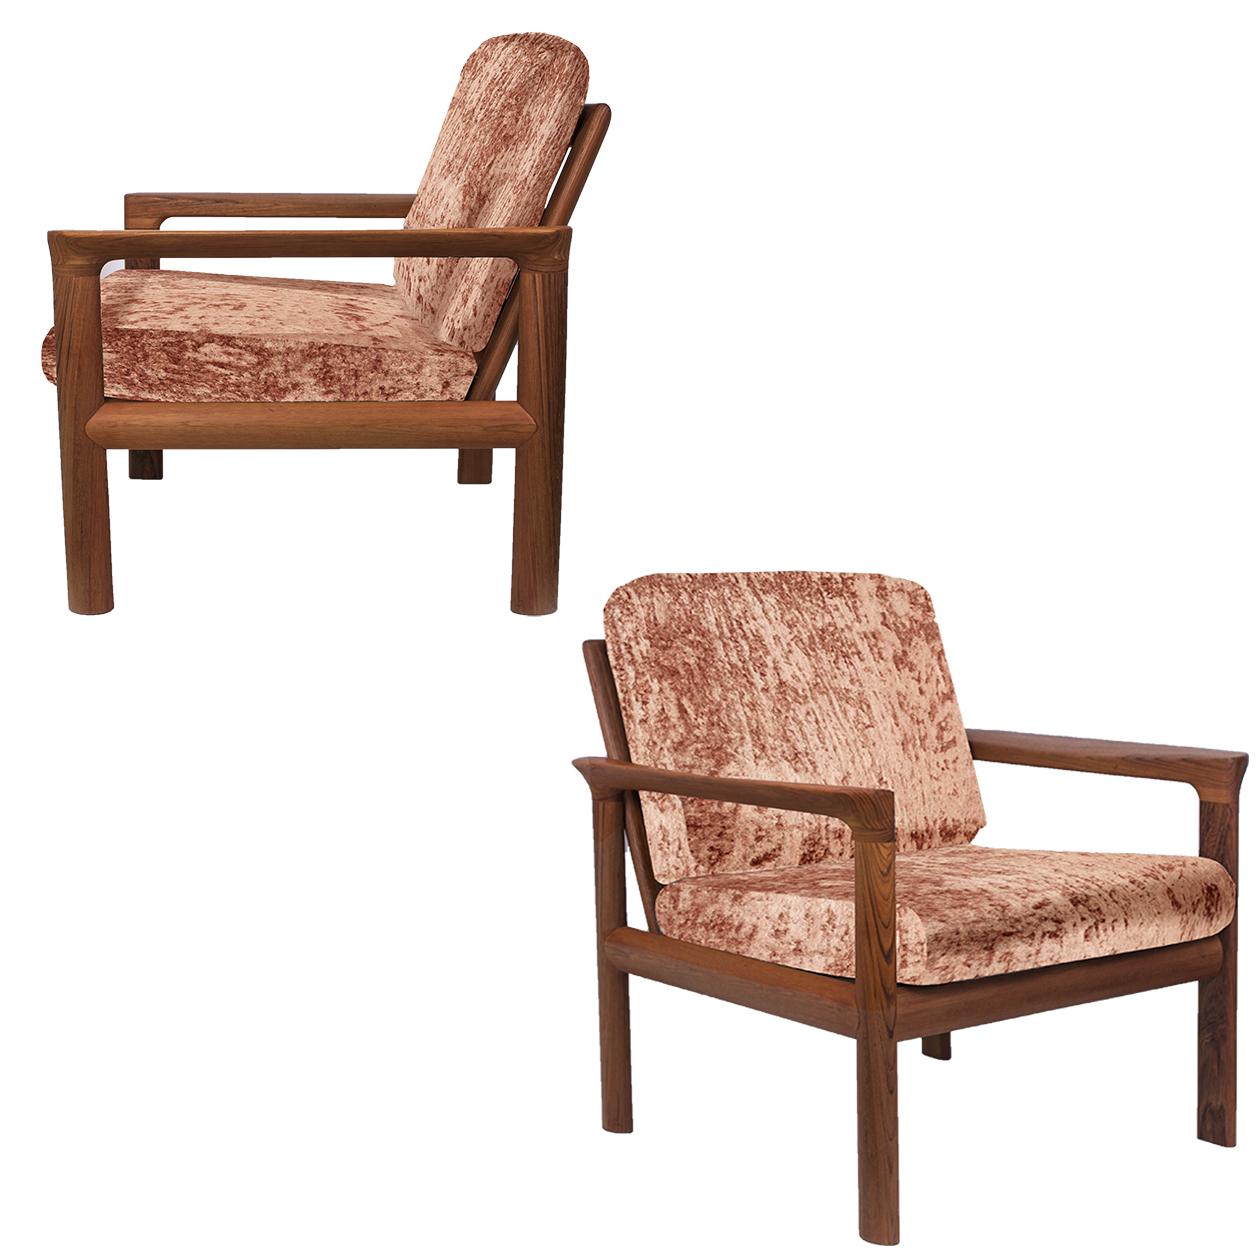 Cette paire de chaises longues a été conçue par Sven Ellekaer pour Komfort, au Danemark, dans les années 1960. 
Il se caractérise par un magnifique cadre en teck massif façonné, recouvert d'un nouveau velours unique et luxueux. Les chaises sont à